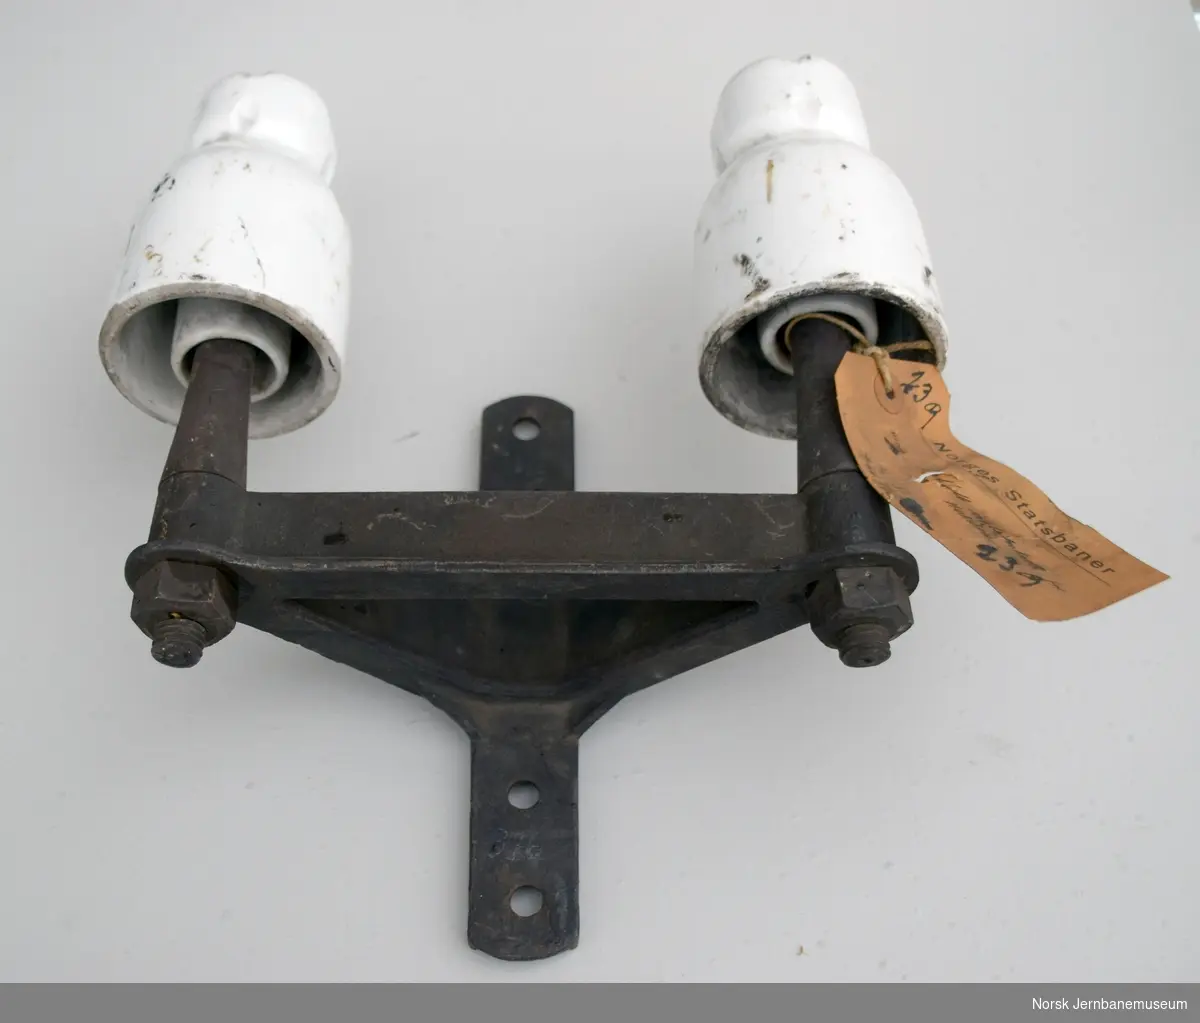 Dobbelt isolatorkrok, for sterkstrøm, veggfeste. 
Preussisk type, utviklet 1858 av Von Chauvin, kalt "Dobbelglocke"